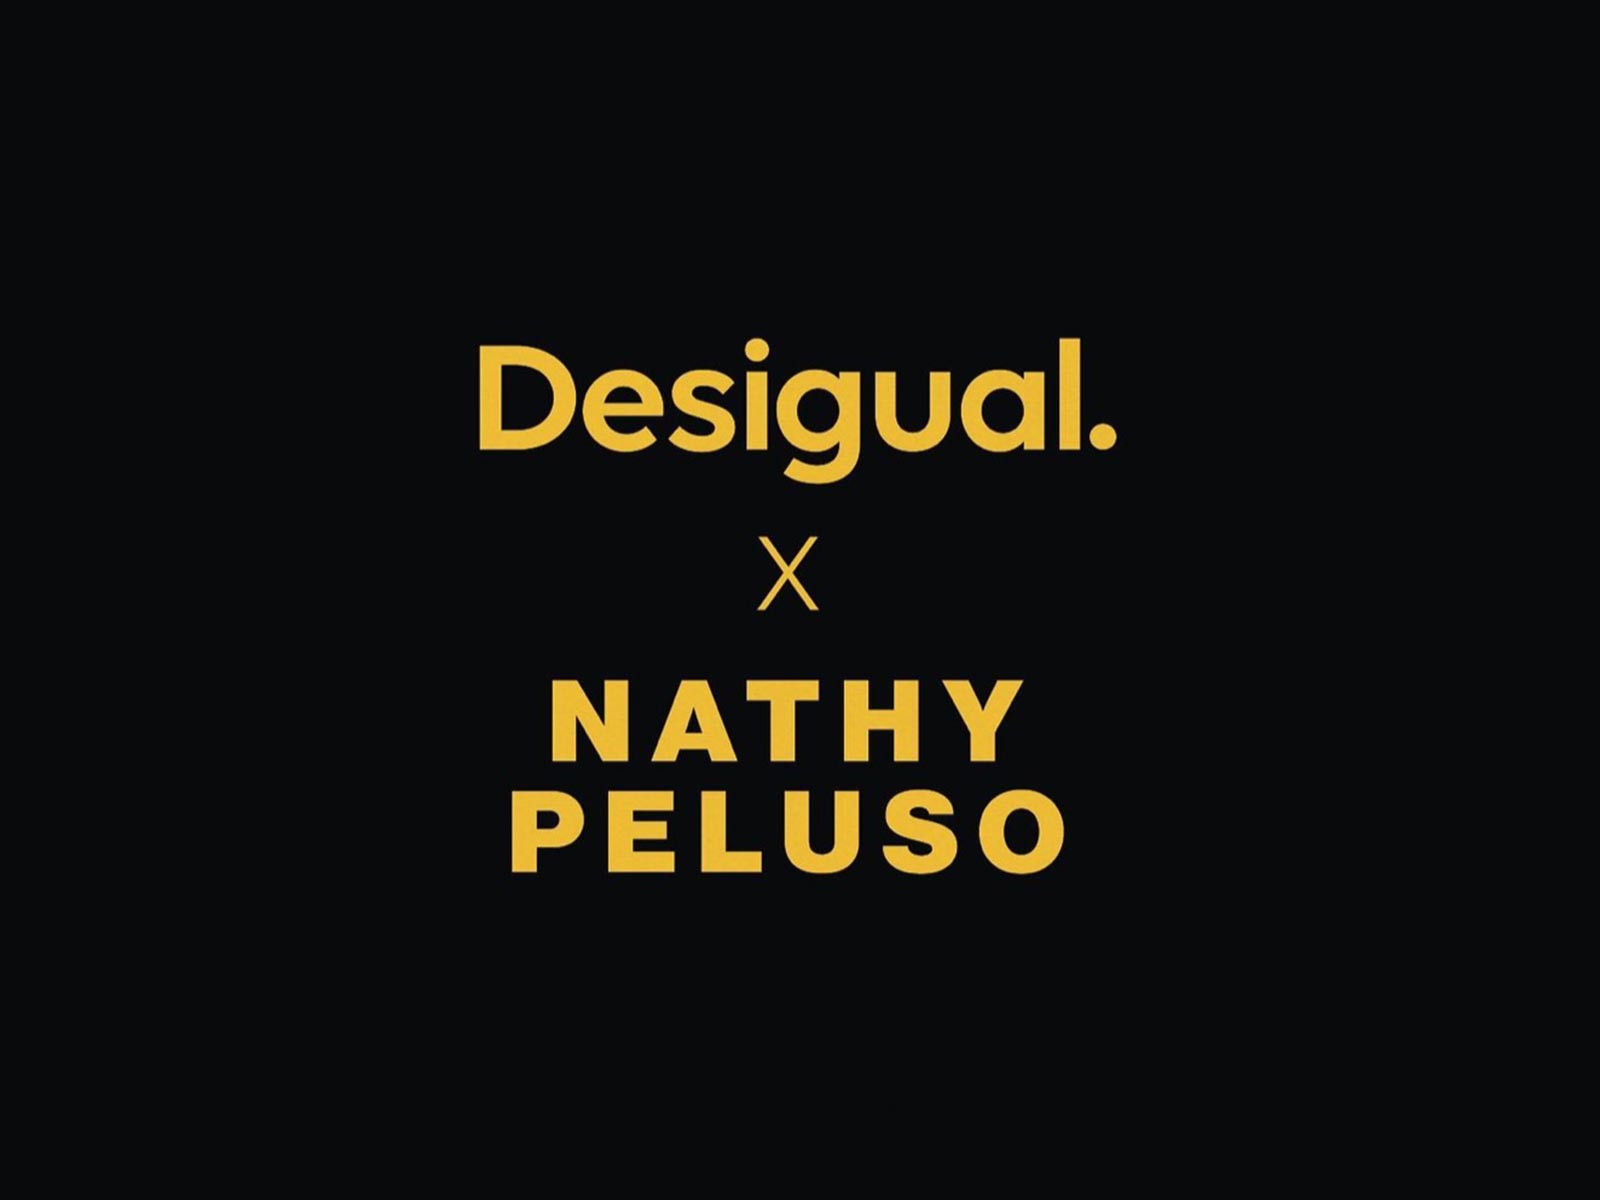 Con Nathy Peluso y en blanco y negro: Así será la próxima campaña de Desigual